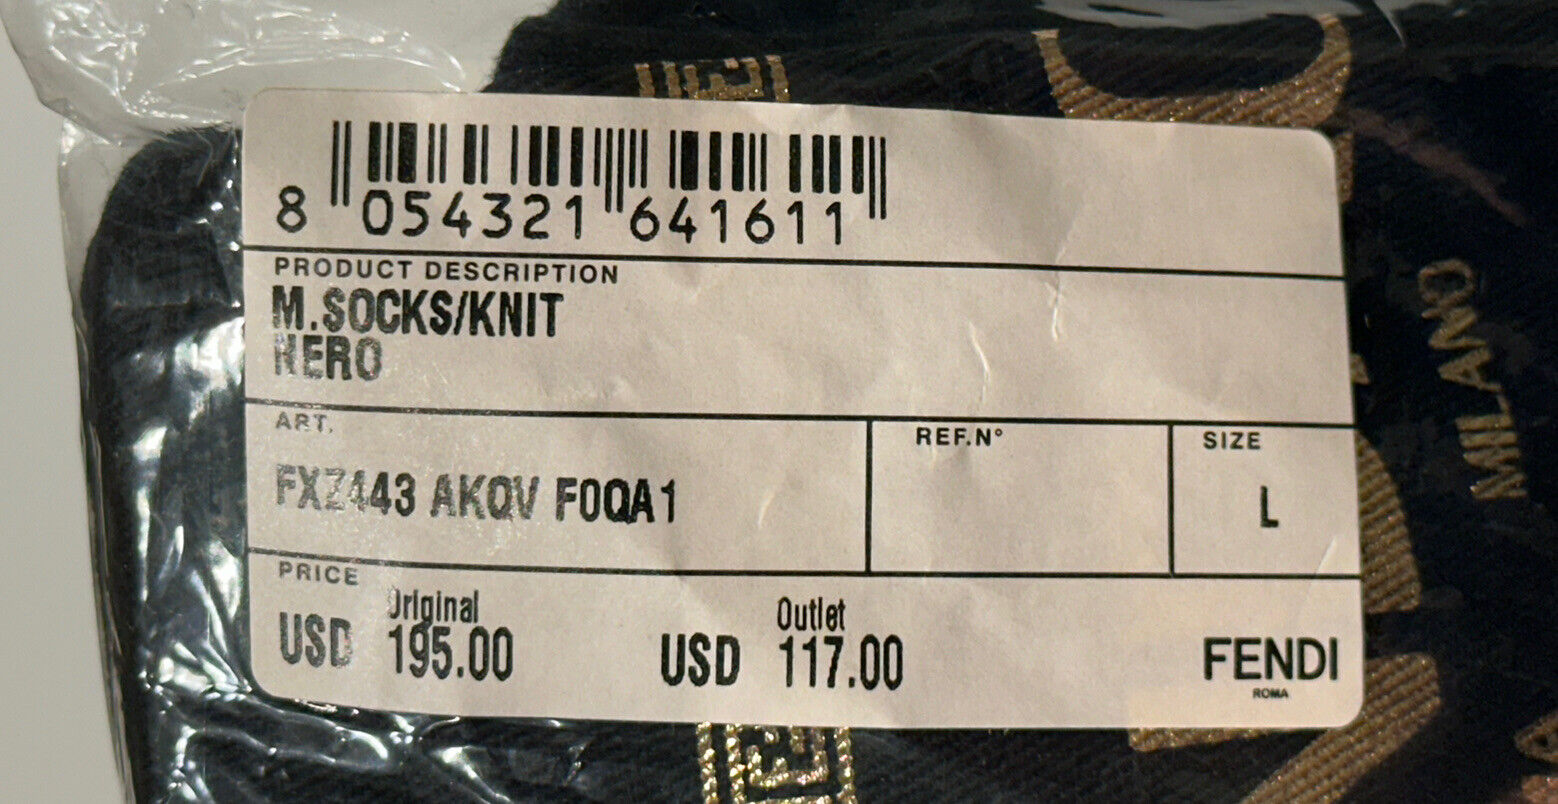 NWT 195 долларов США Трикотажные носки Fendi FF, черные, большие, сделано в Италии FXZ443